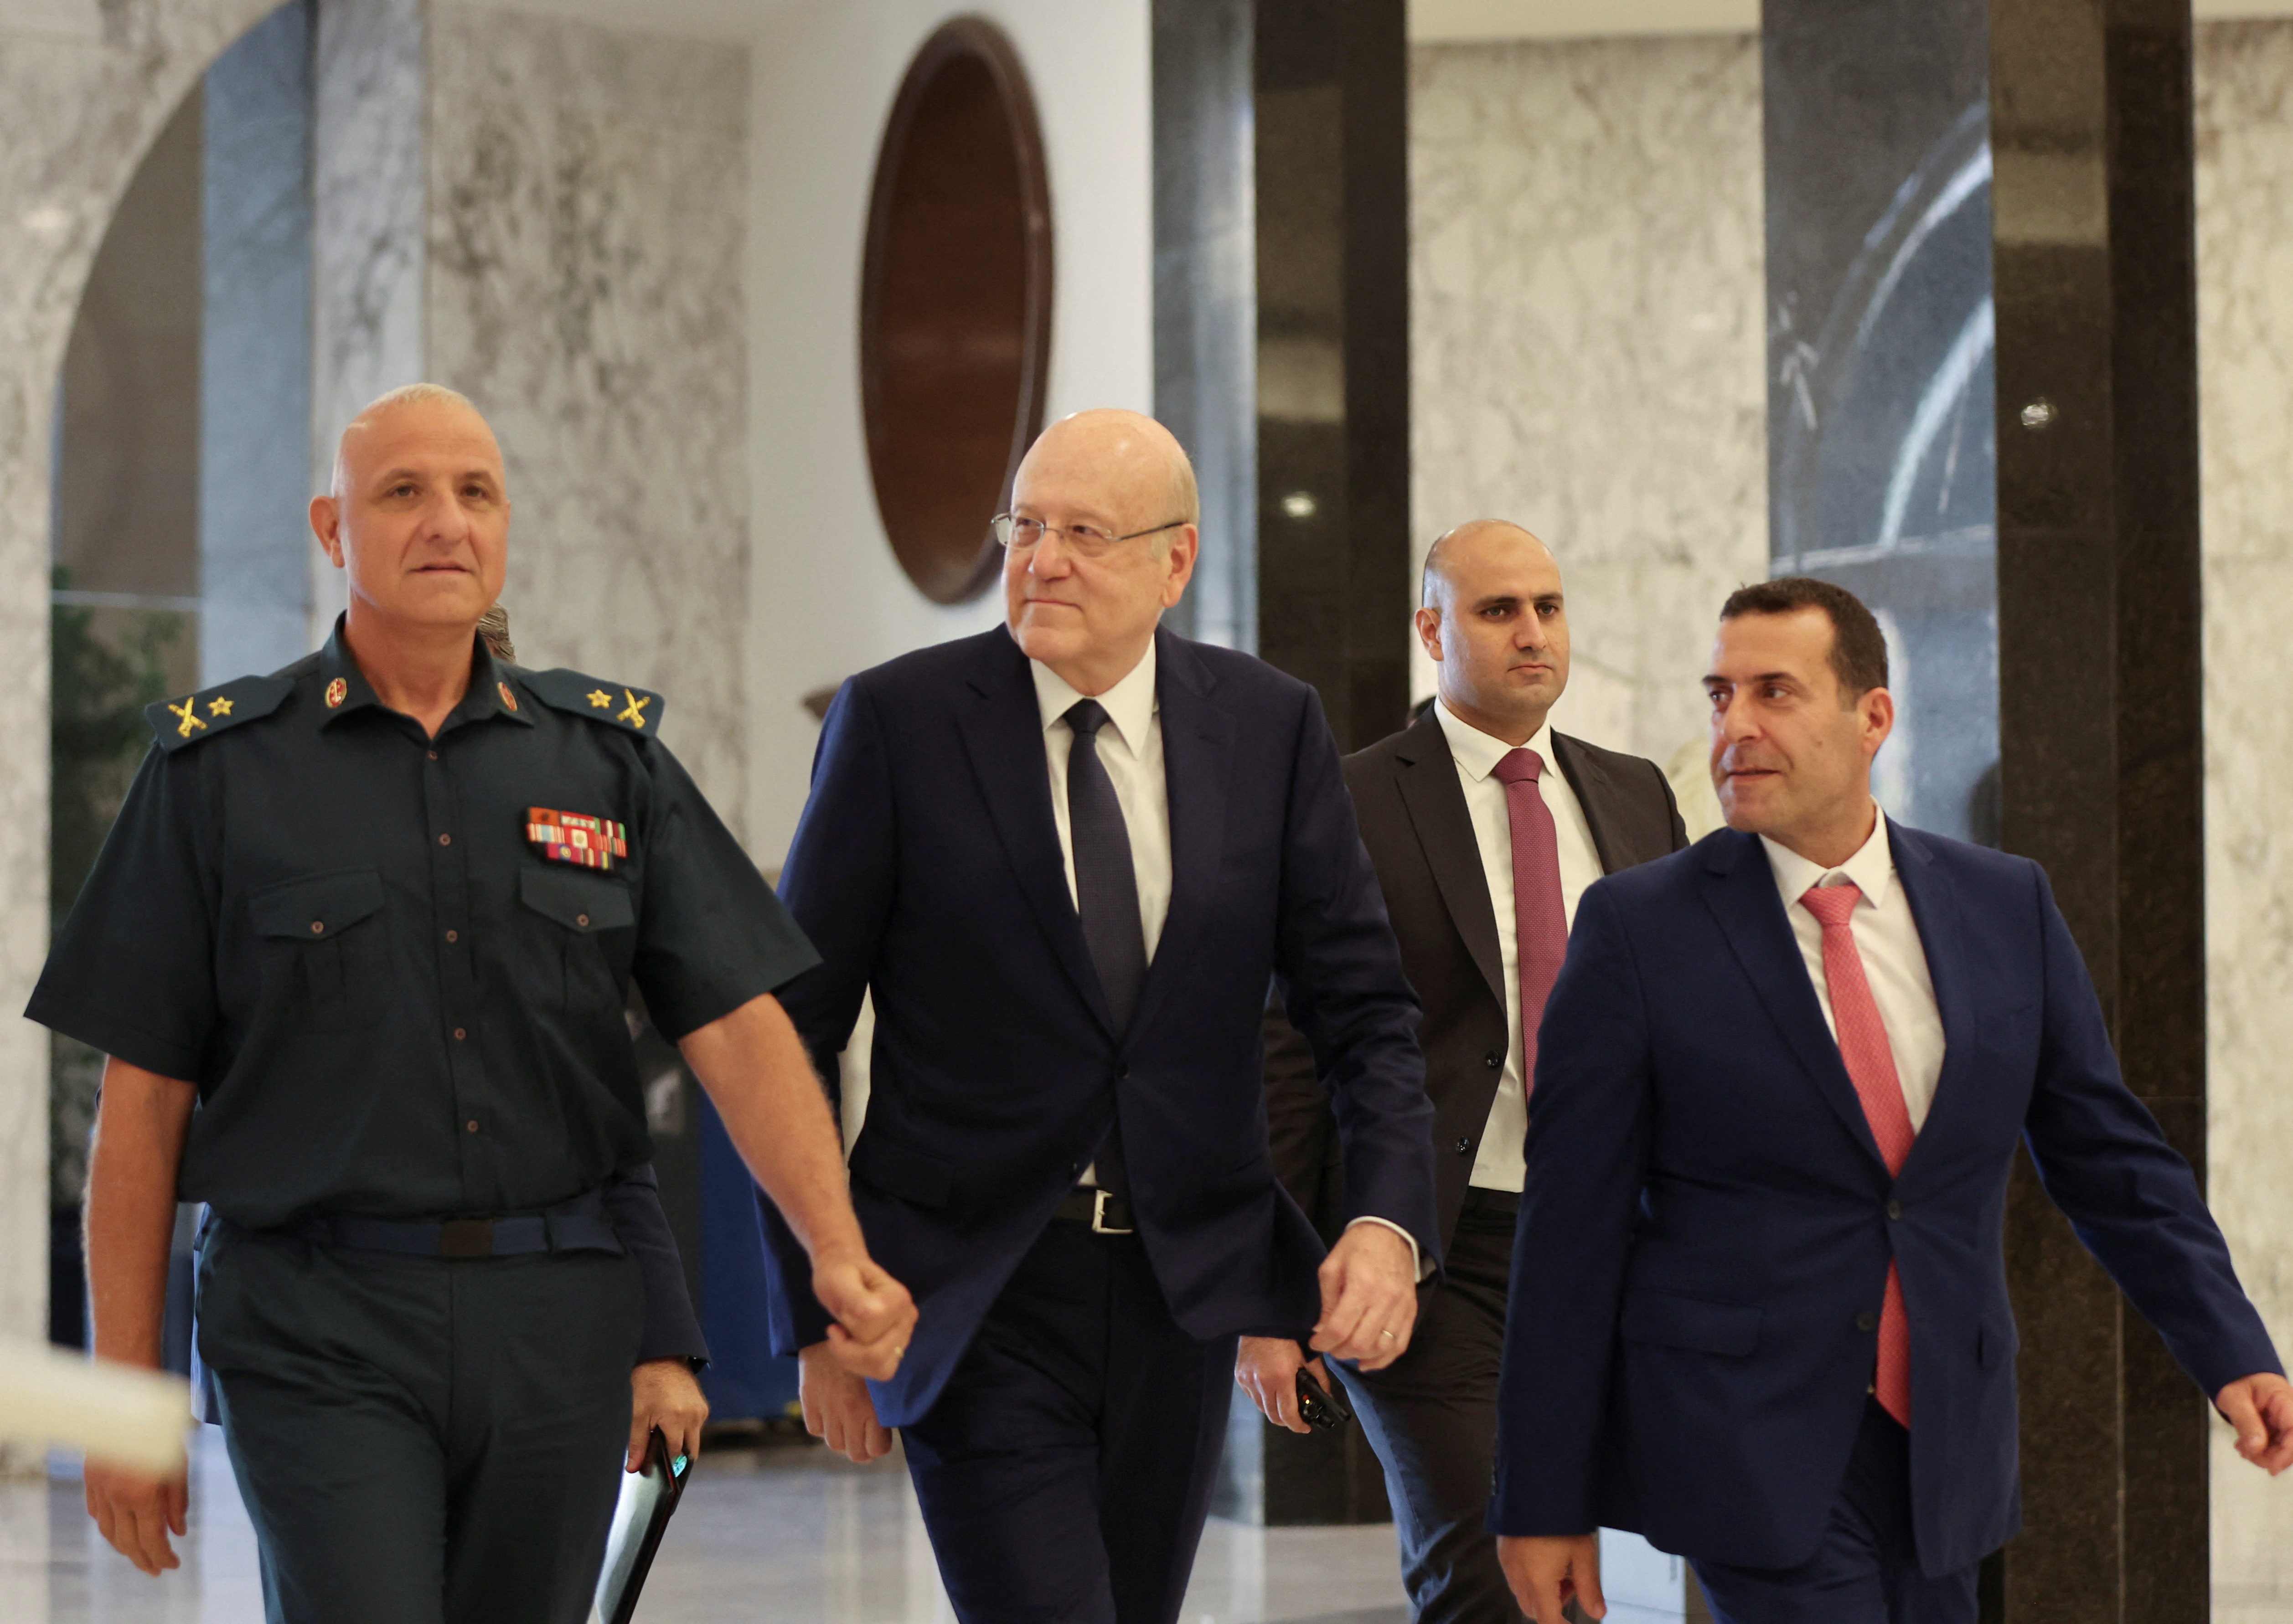 Lebanon's caretaker Prime Minister Najib Mikati arrives at the presidential palace in Baadba